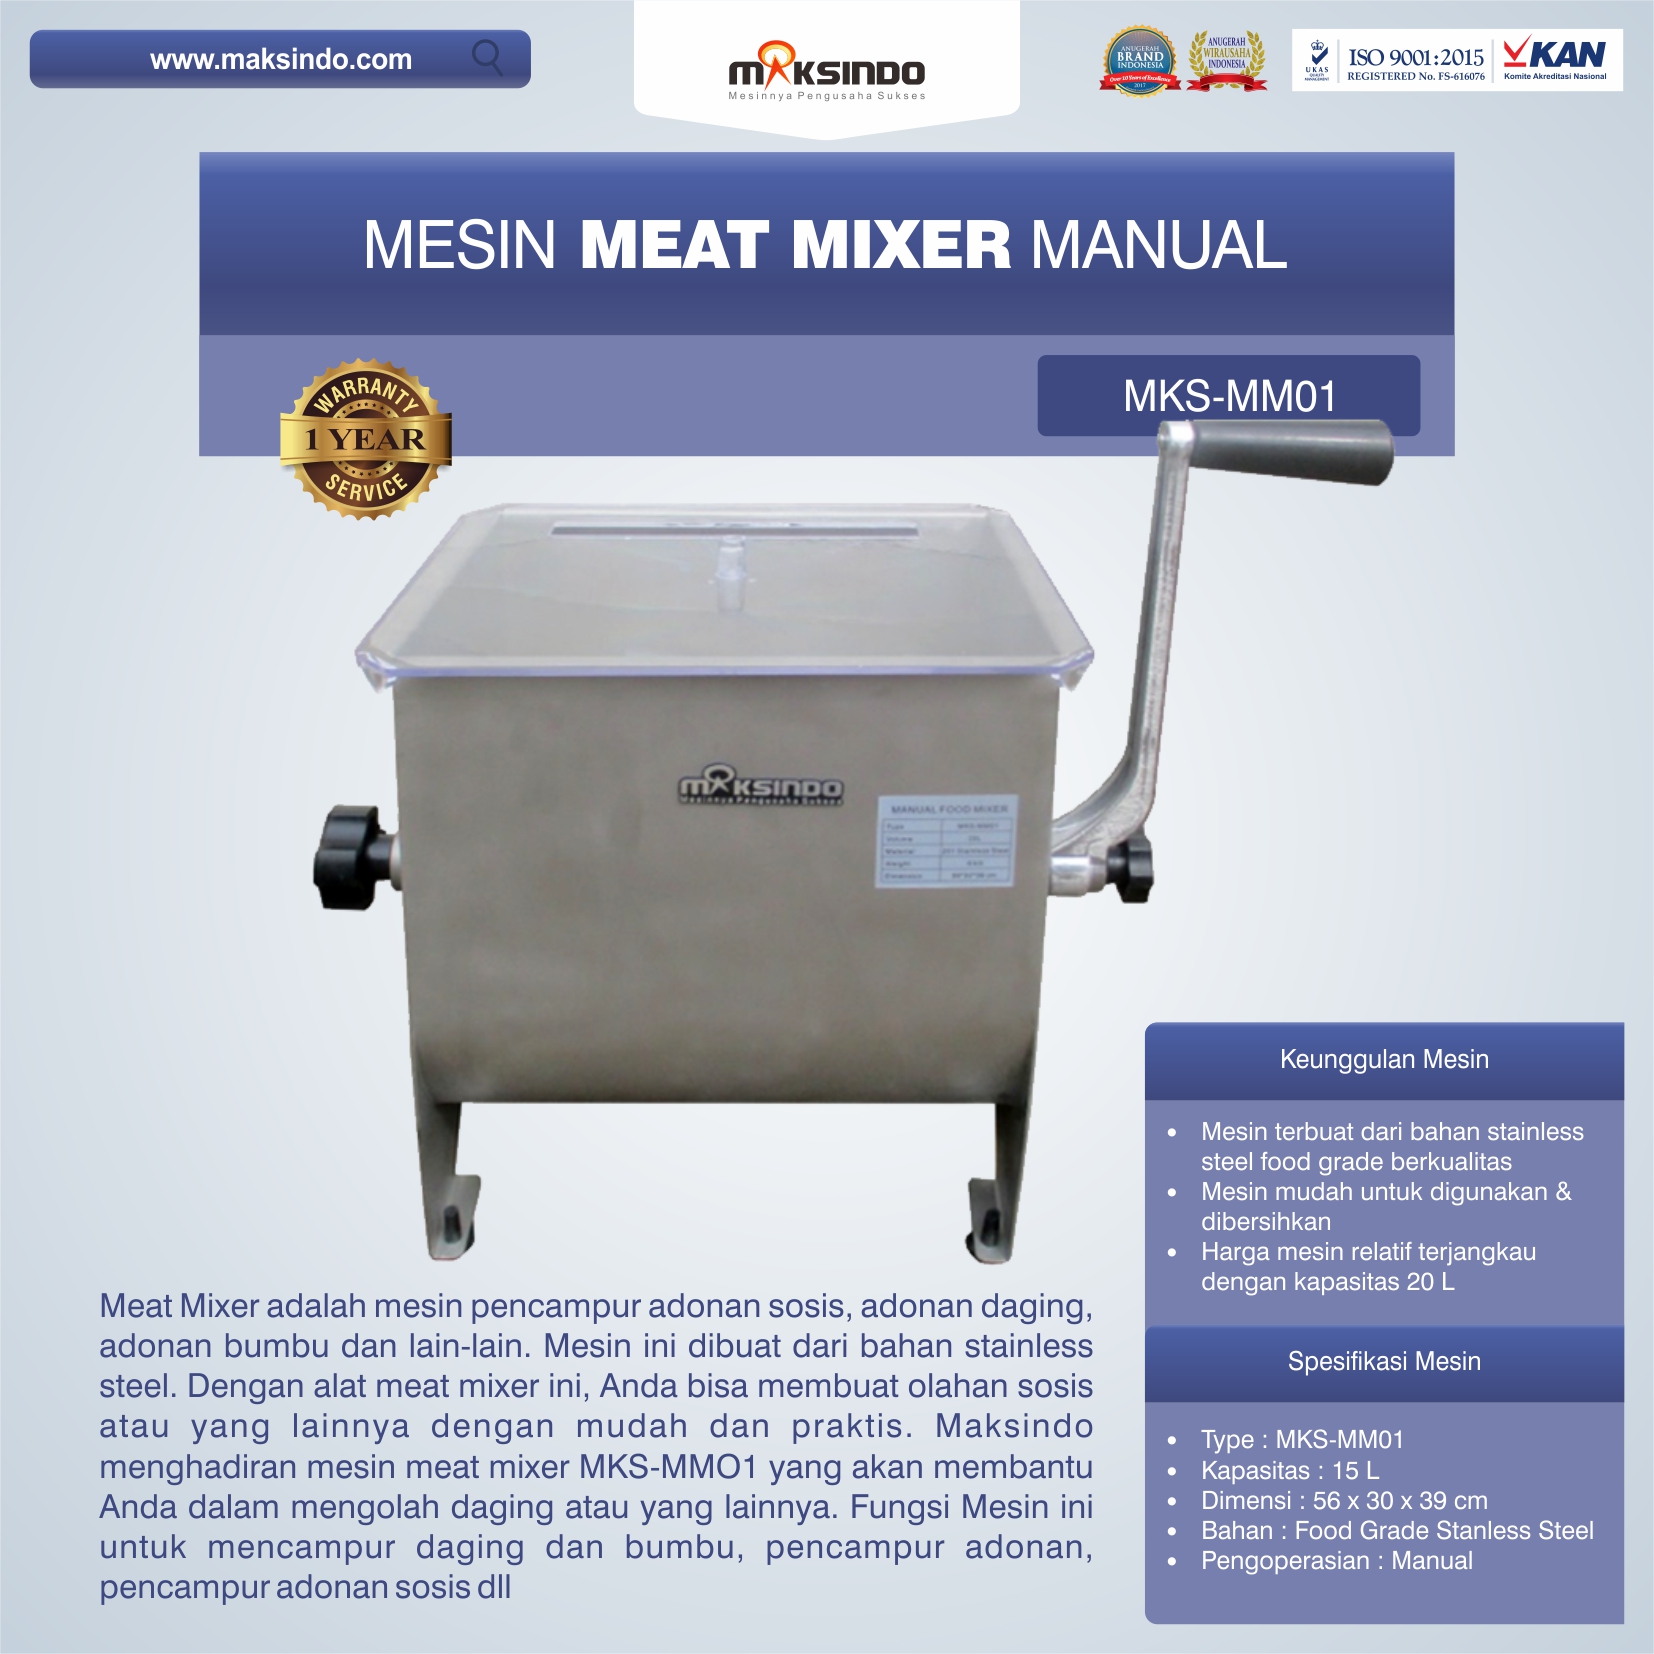 Jual Manual Meat Mixer MKS-MM01 di Tangerang